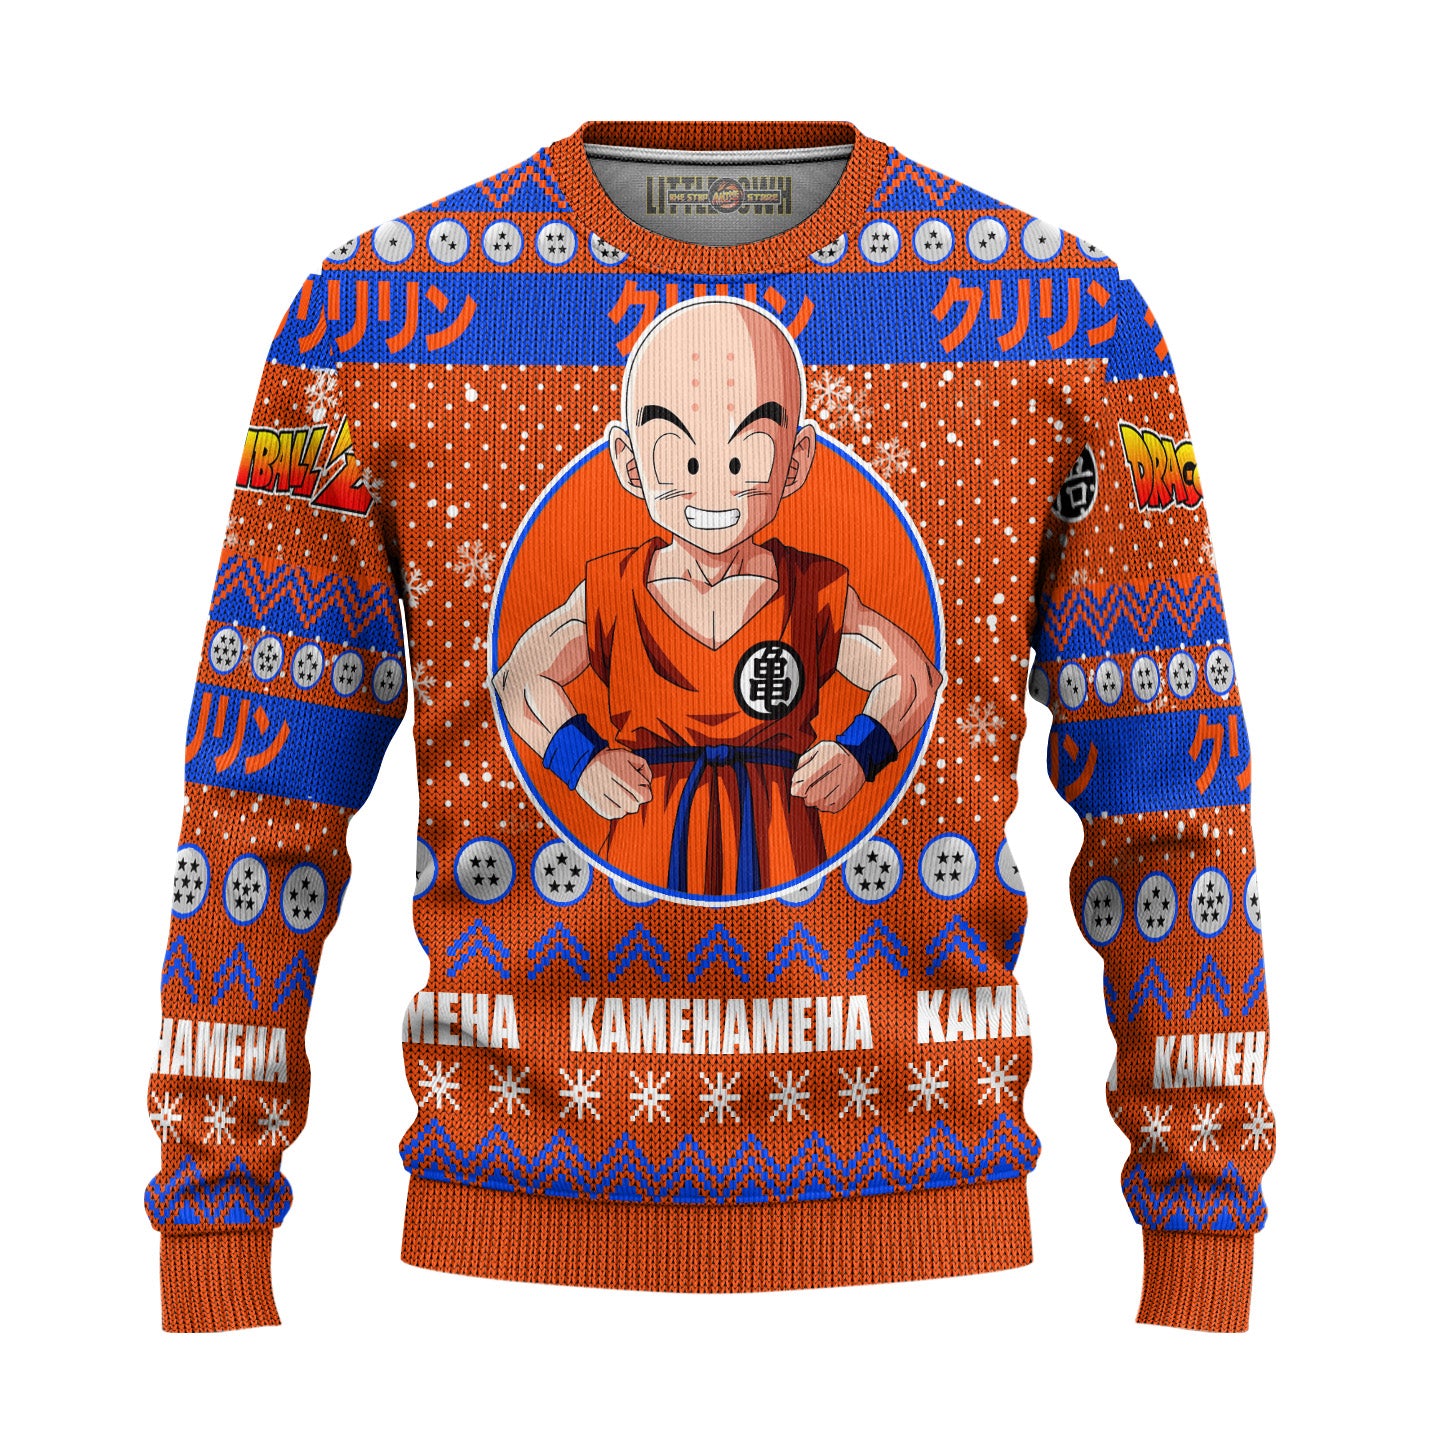 Krillin Anime Ugly Christmas Sweater Dragon Ball Z New Design